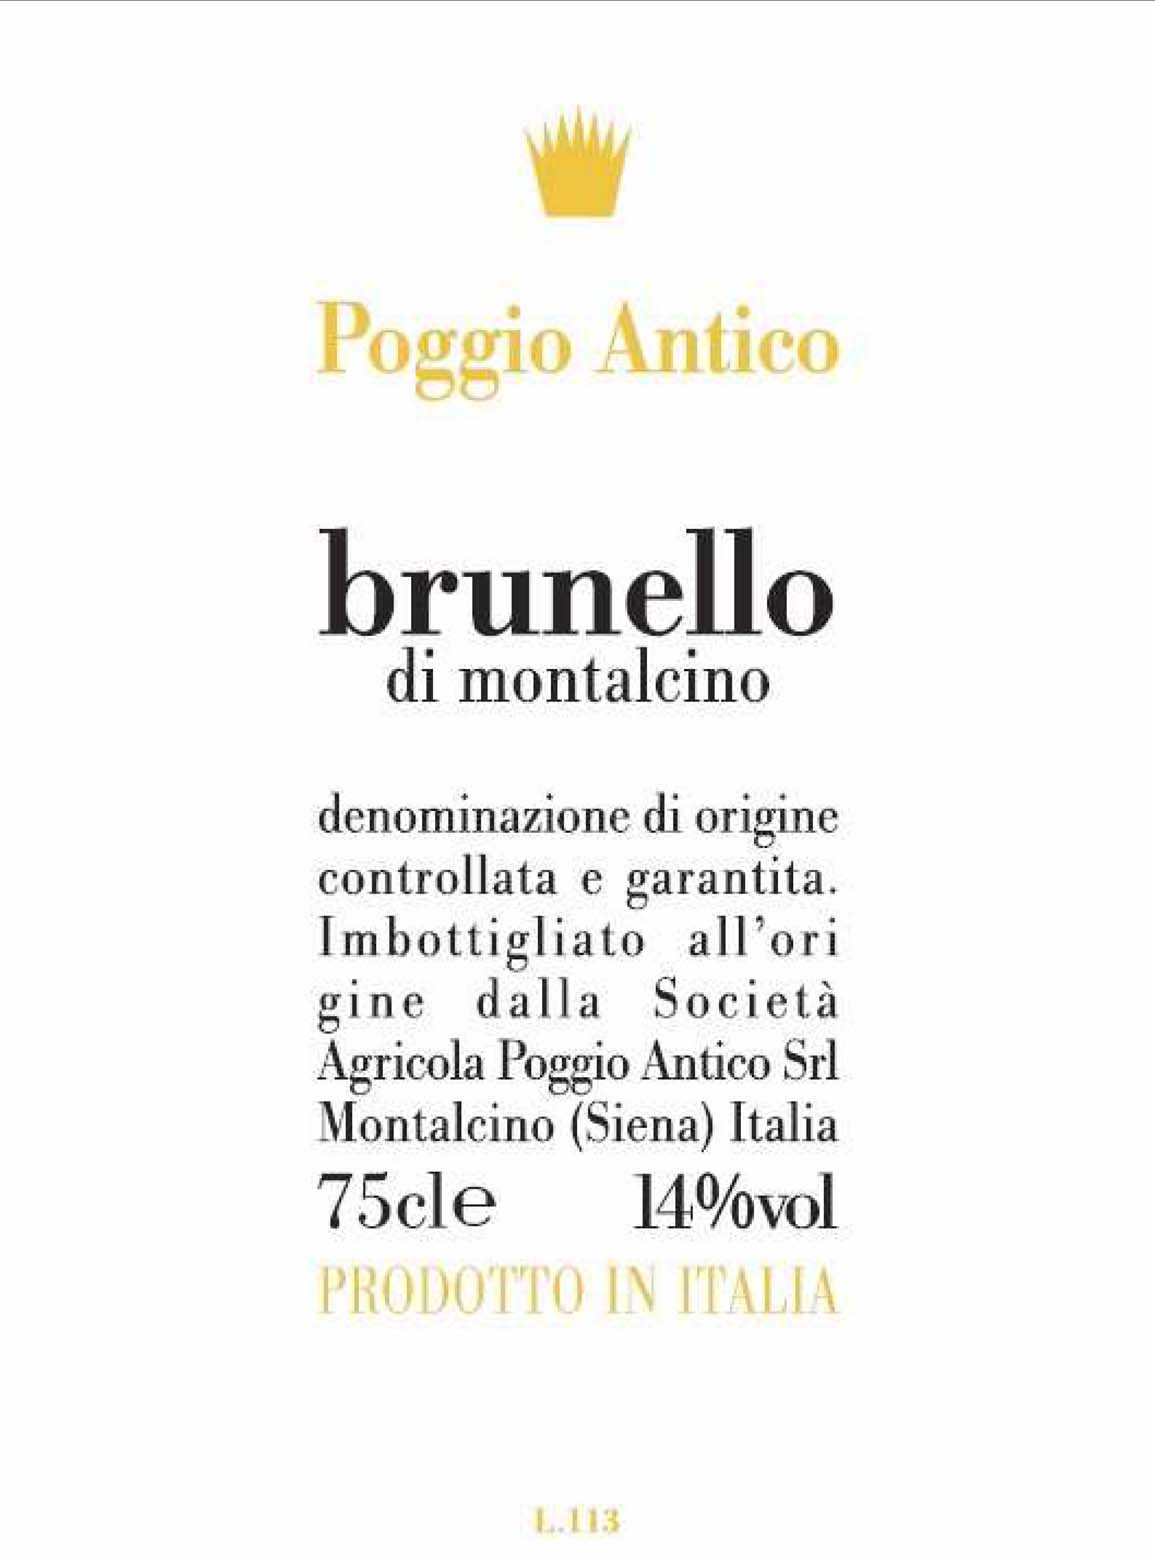 Poggio Antico - Brunello di Montalcino label